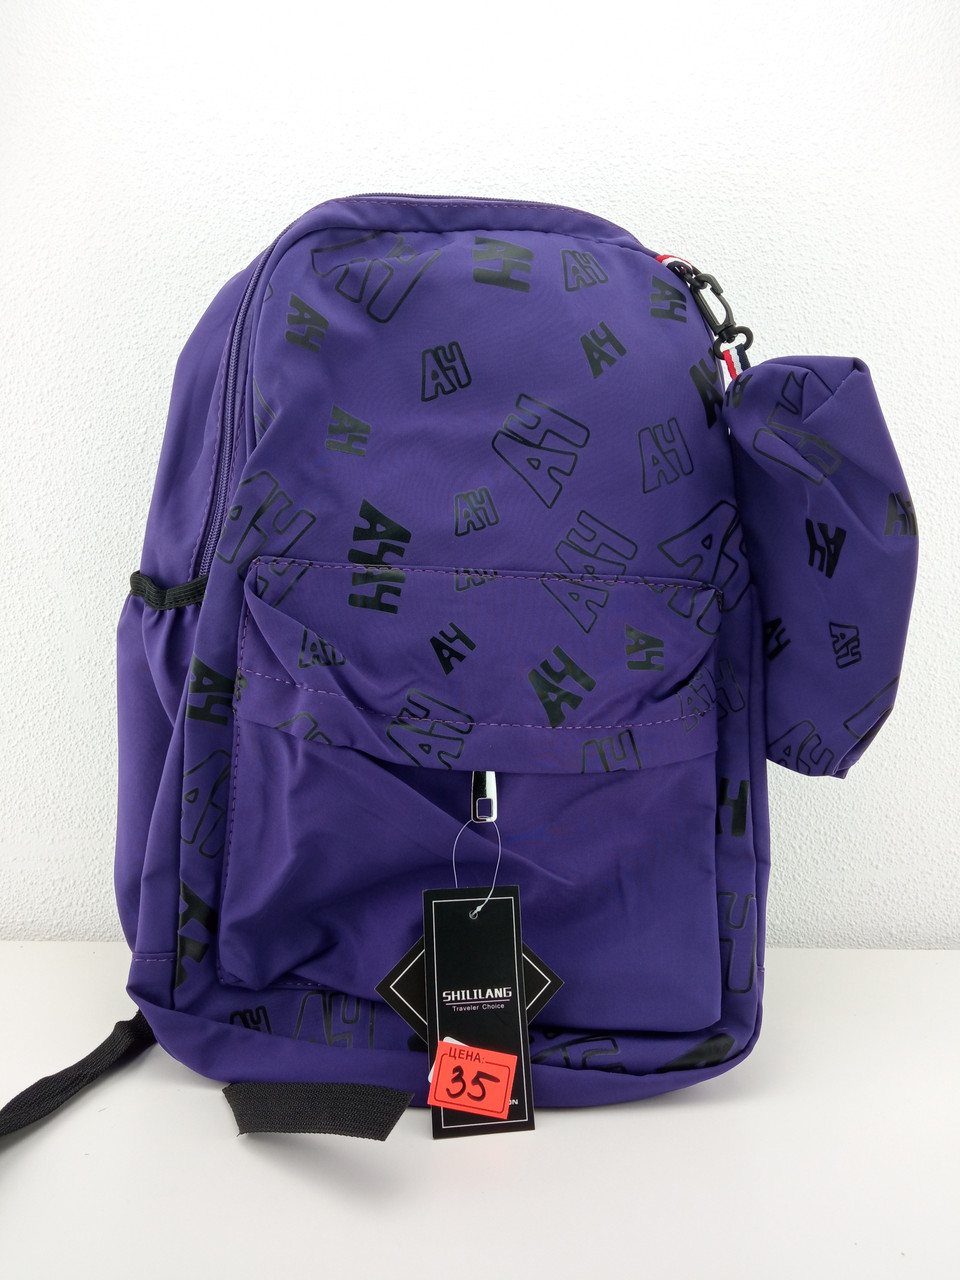 Рюкзак "AH" фиолетовый 42 х 30 см с пеналом, фото 1